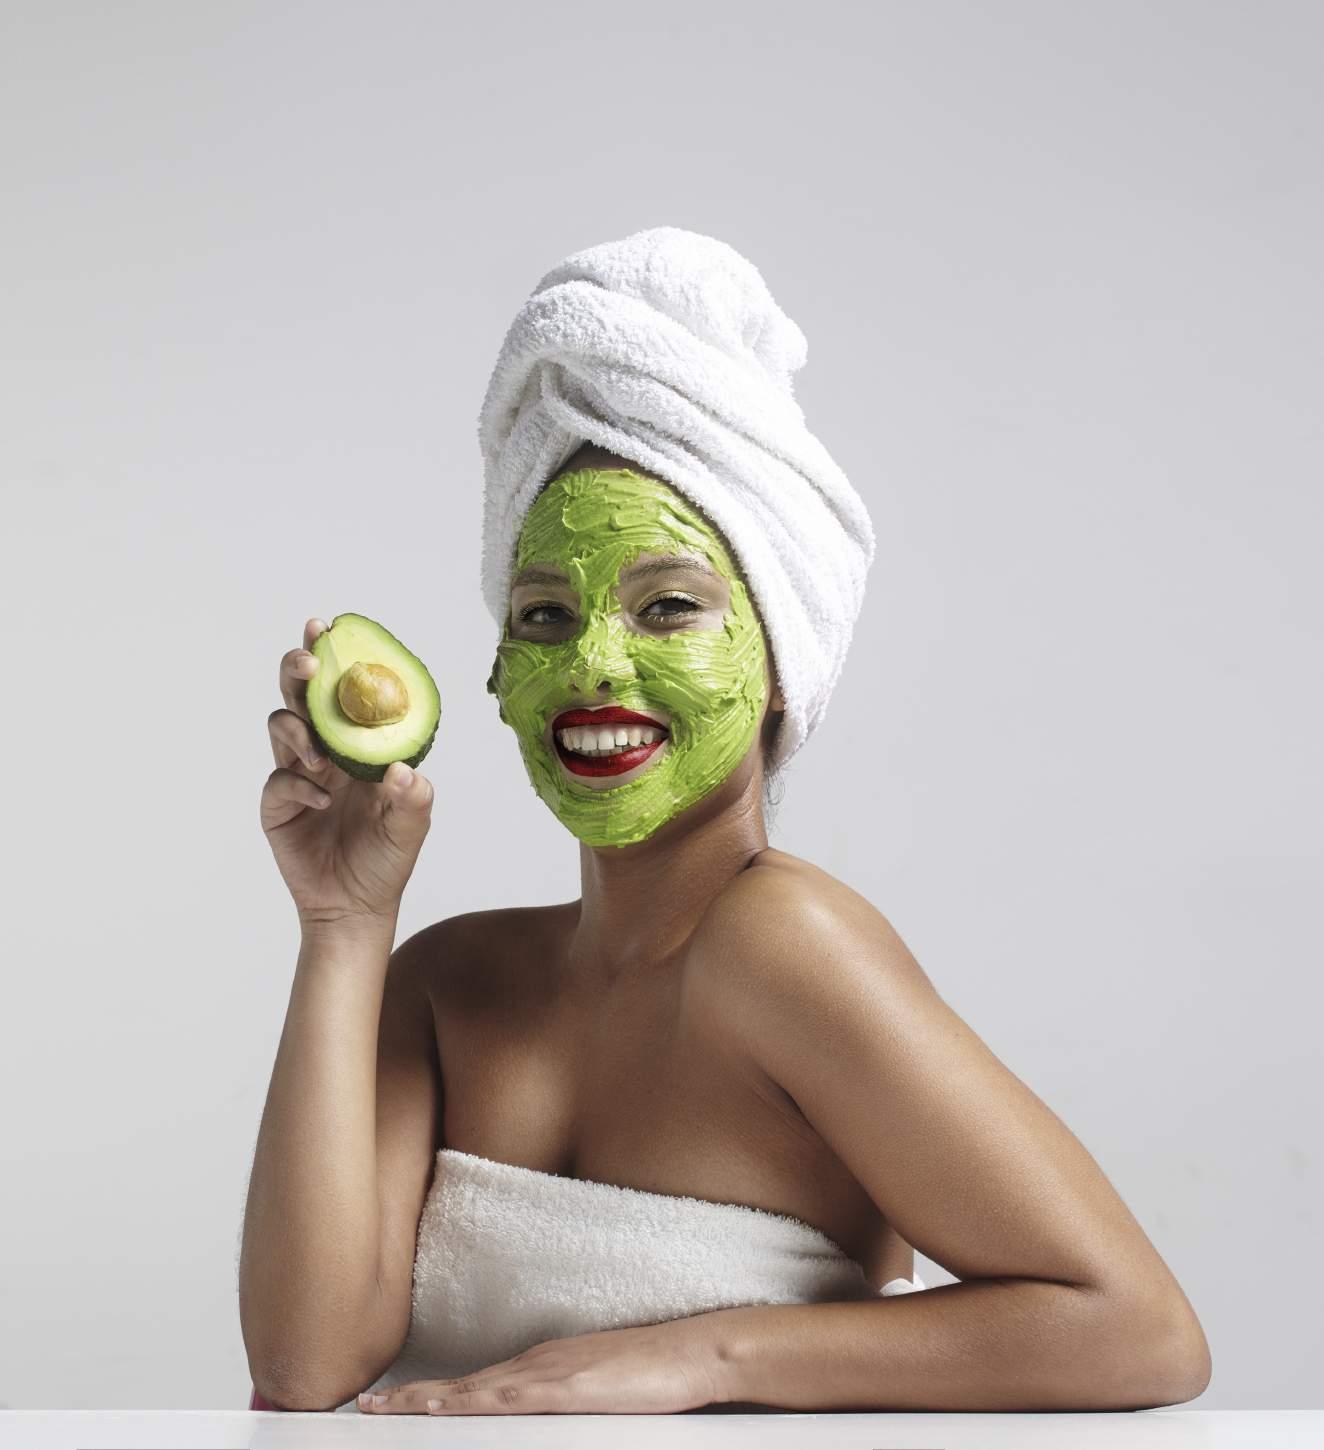 Napravite jednostavne maske od avokada za suhu kosu i kožu